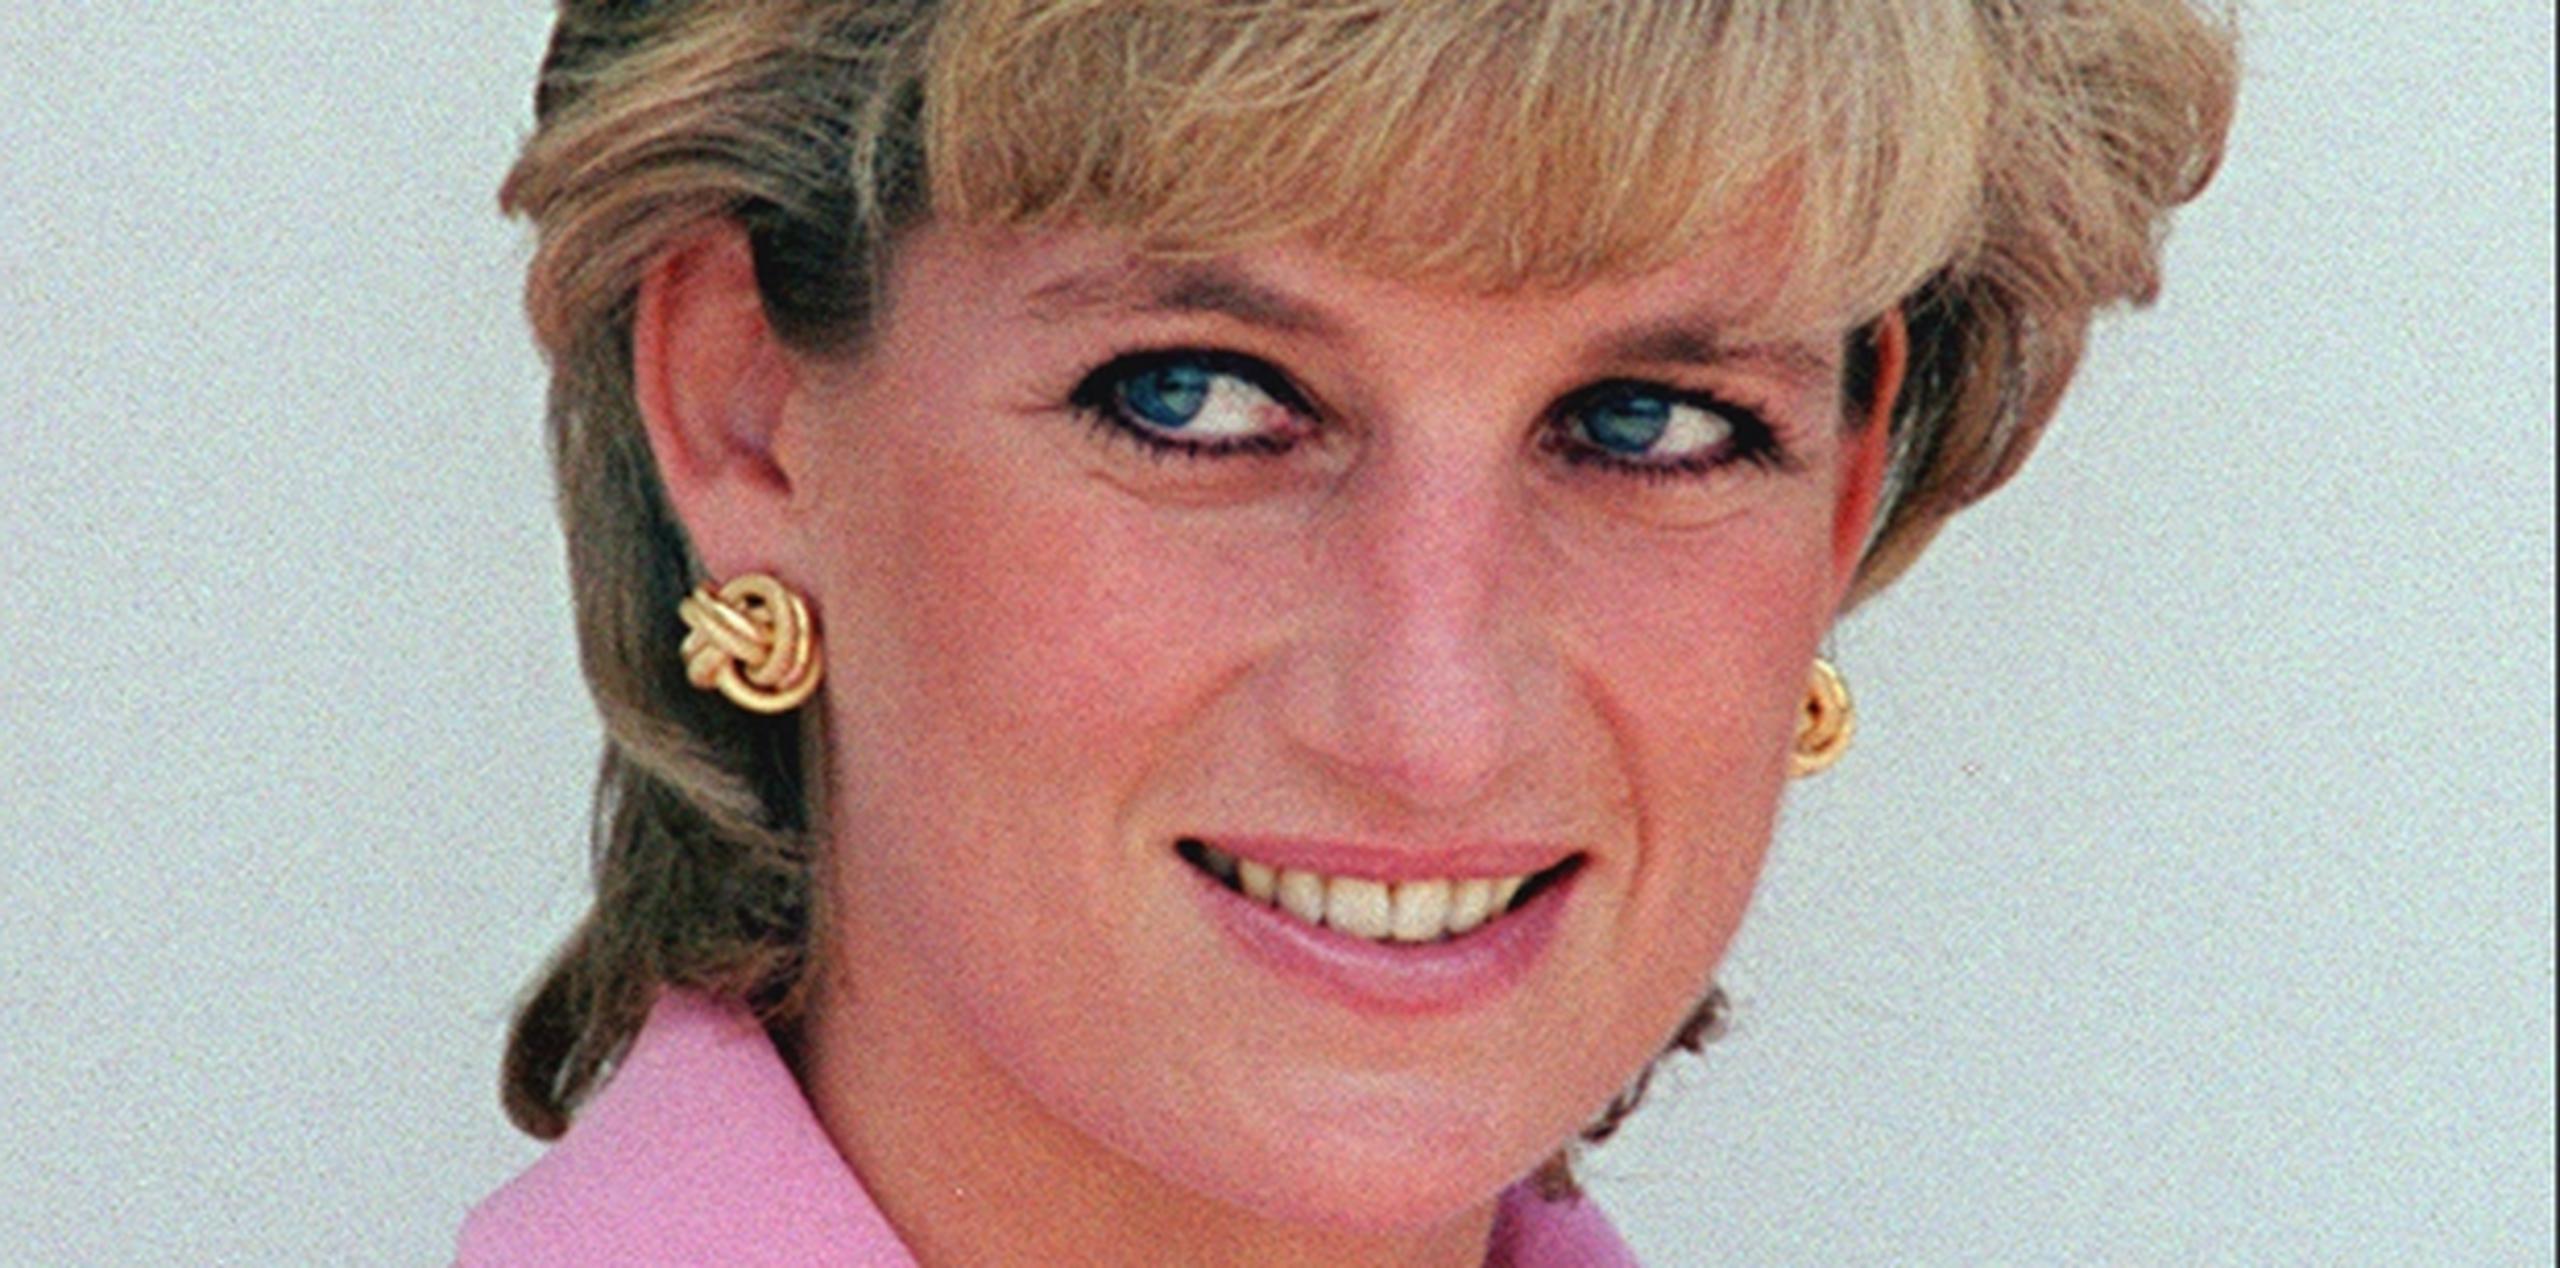 Diana se casó con el príncipe Carlos de Gran Bretaña el 19 de julio de 1981. La pareja se separó en 1992 y se divorció en 1996. (Archivo)